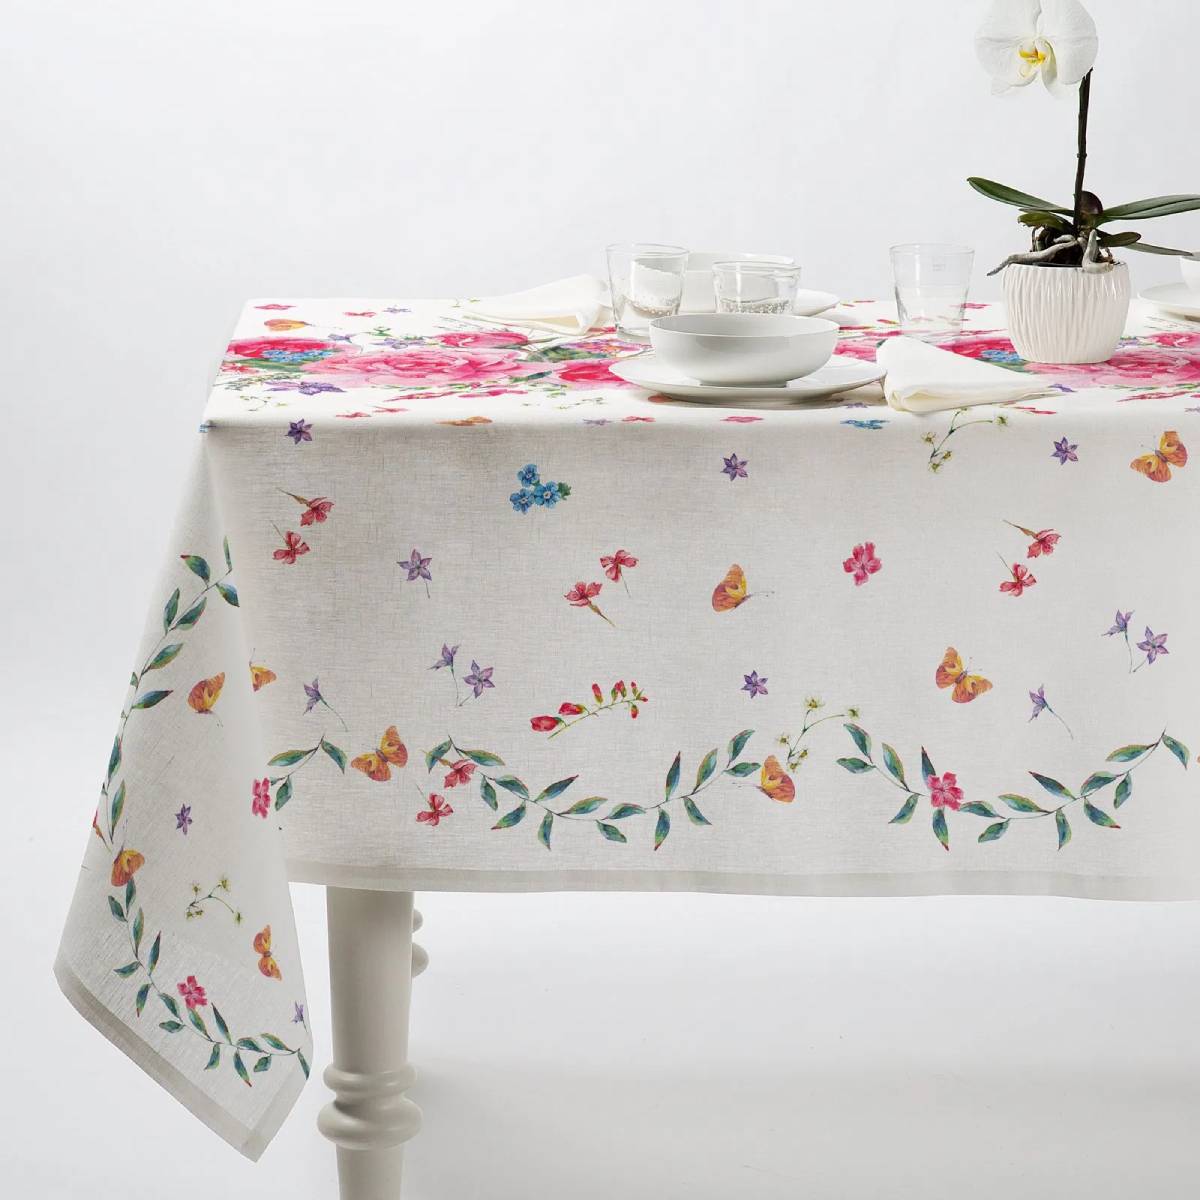 Tovaglia Caleffi Roseto in panama di puro cotone con stampa digitale. Fantasia con bouquet di rose sul lato superiore del tavolo, e fiorellini e farfalle sulla parte laterale. Fondo bianco.